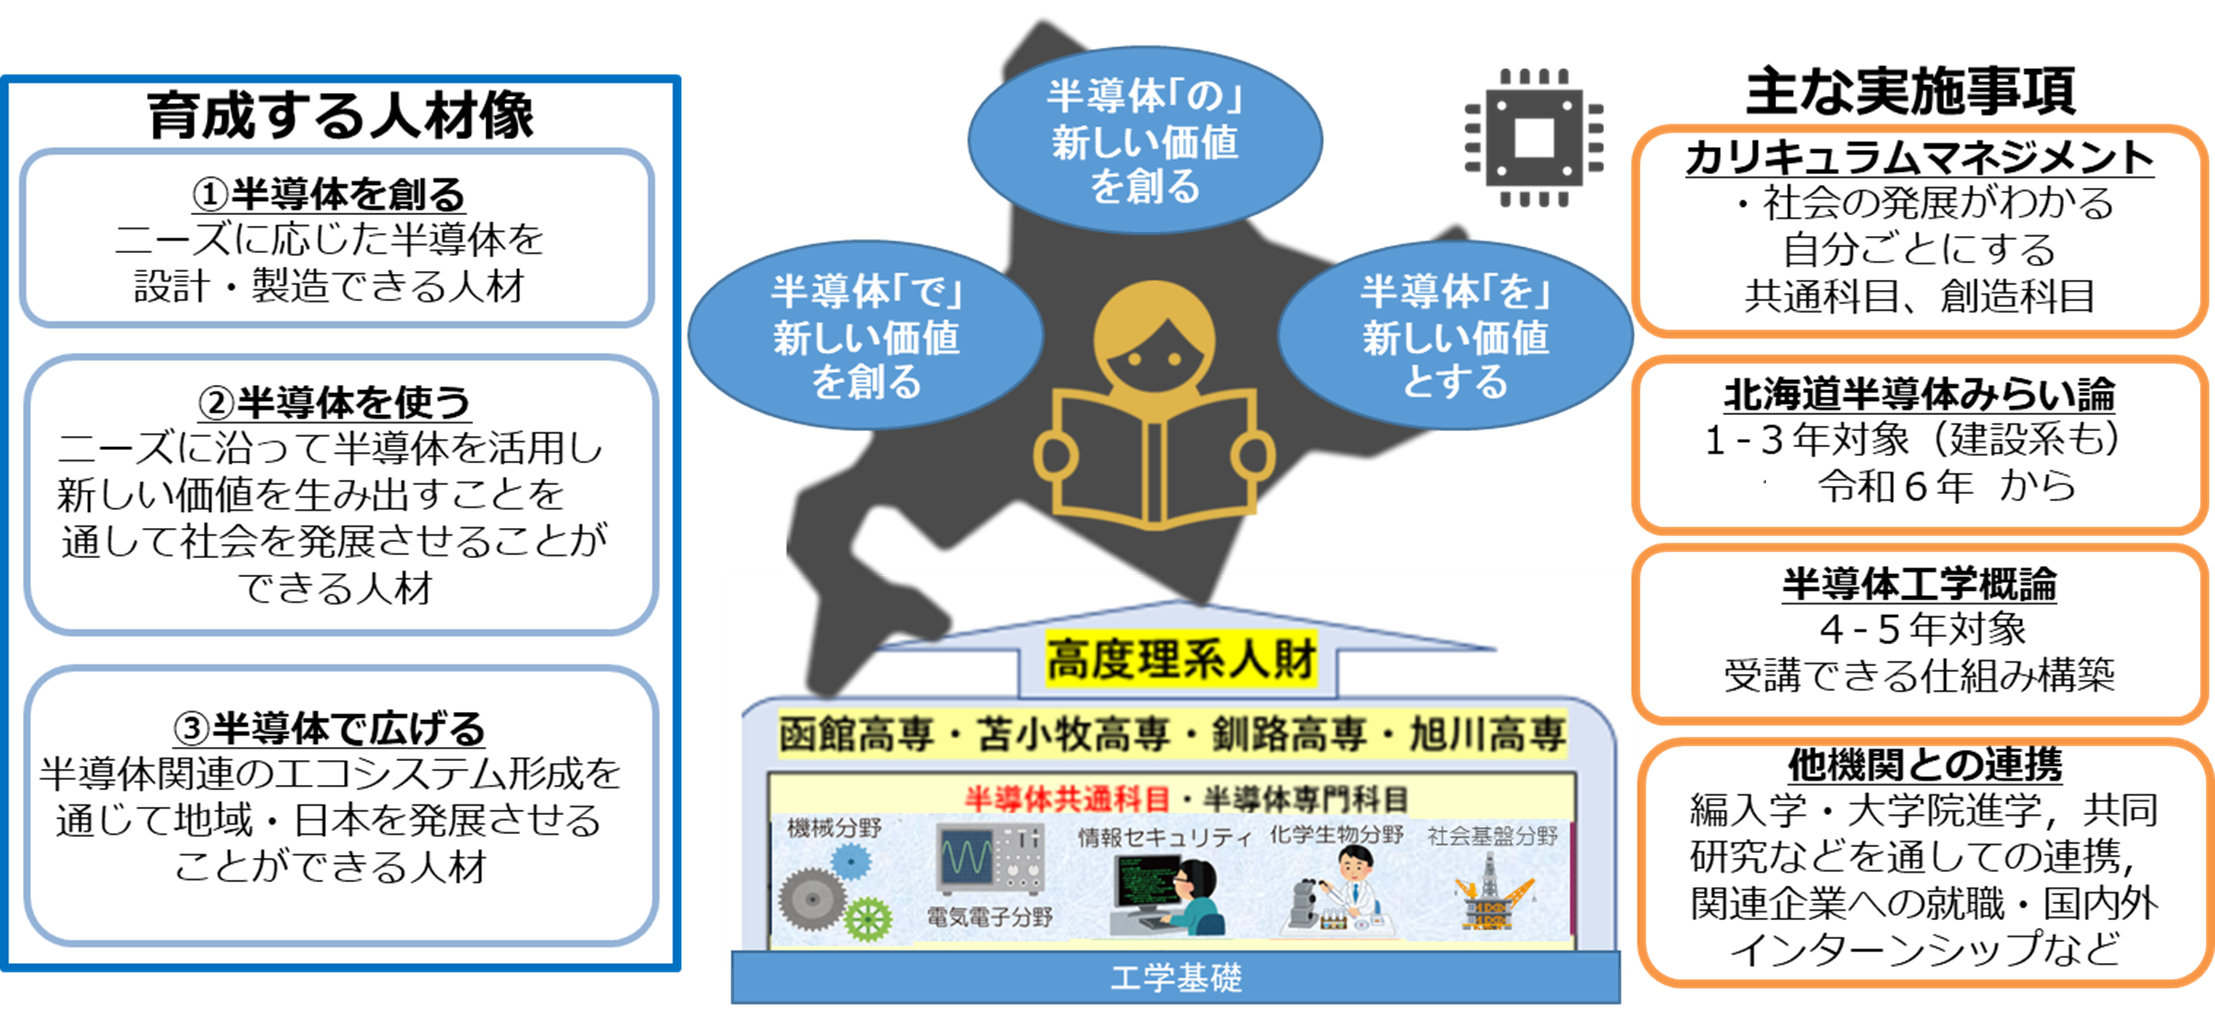 【北海道4高専】低学年向け新規科目「北海道半導体みらい論」を協同で開講します